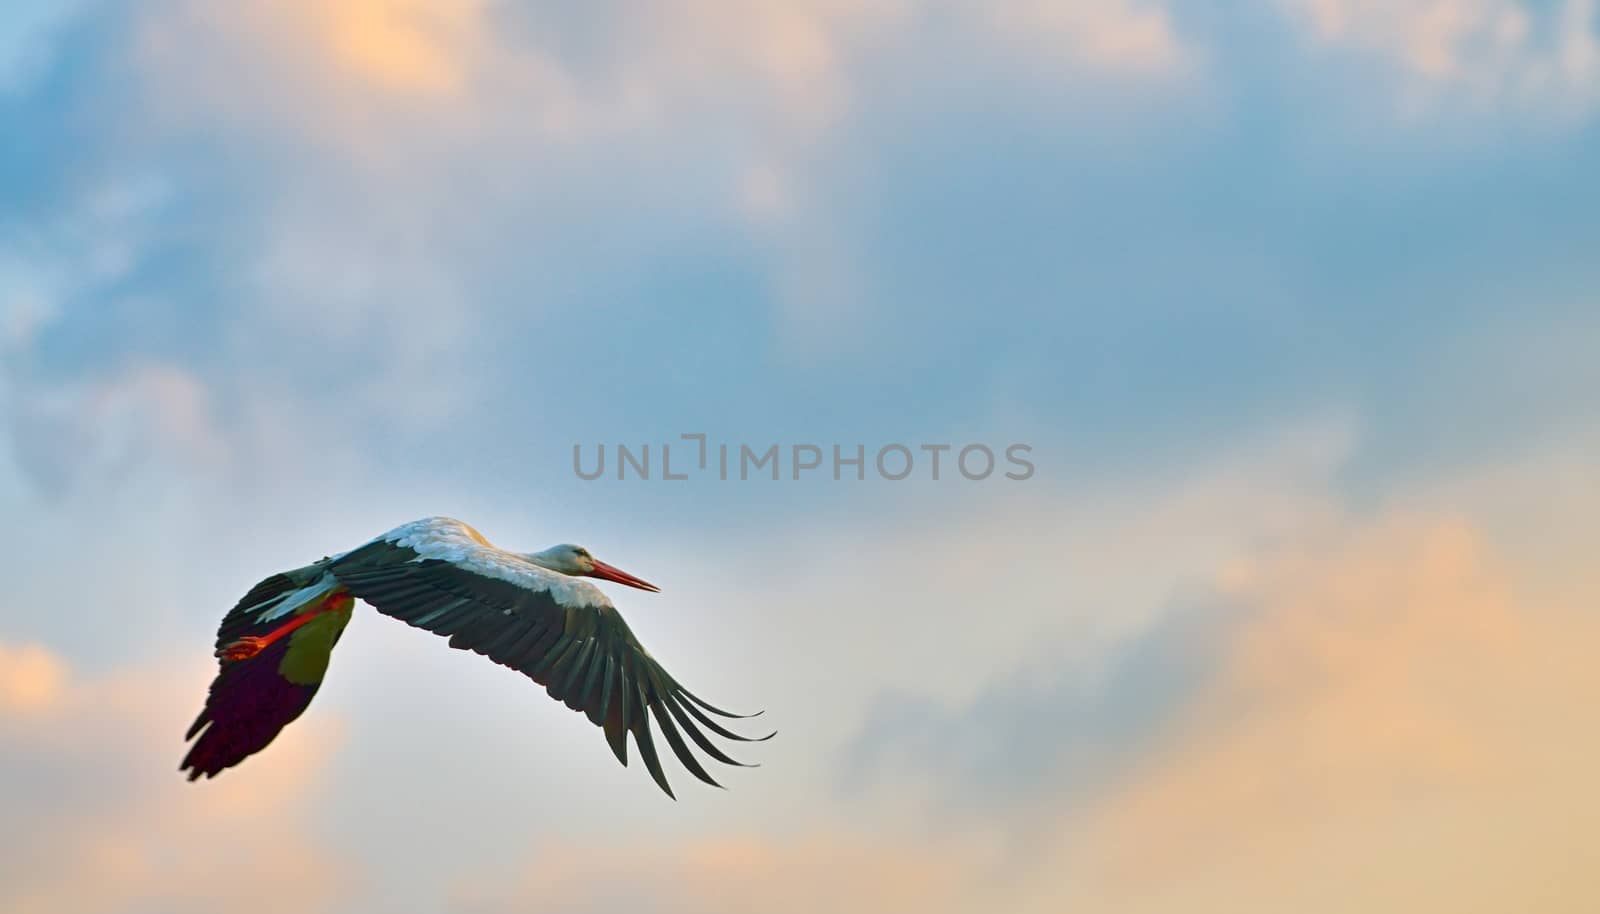 white stork flying on blue sky